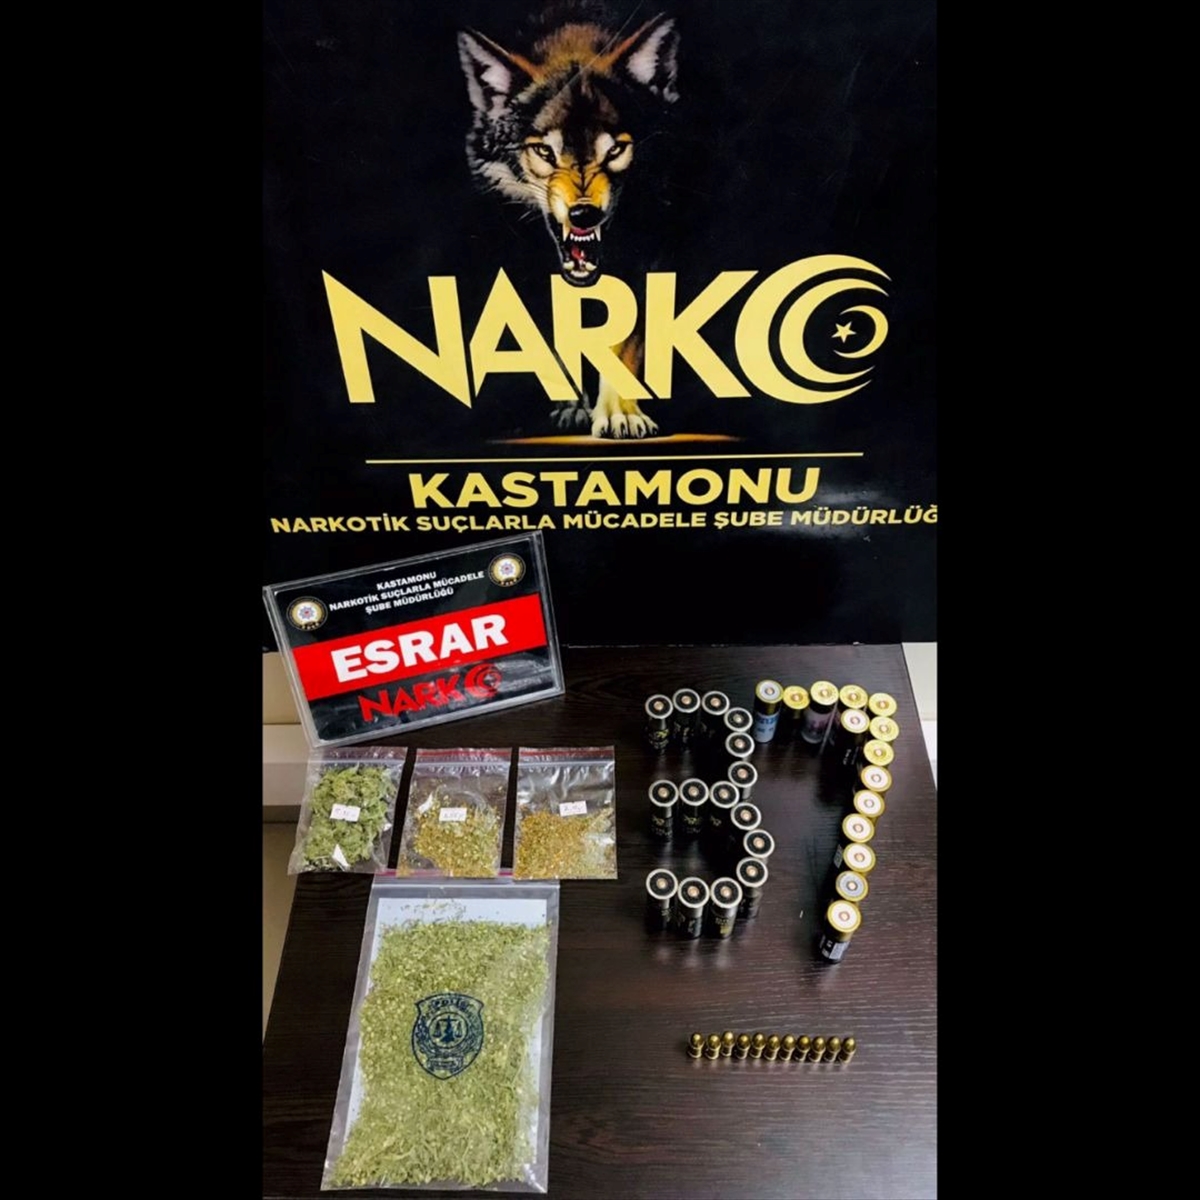 Kastamonu'da düzenlenen uyuşturucu operasyonlarında 3 kişi yakalandı